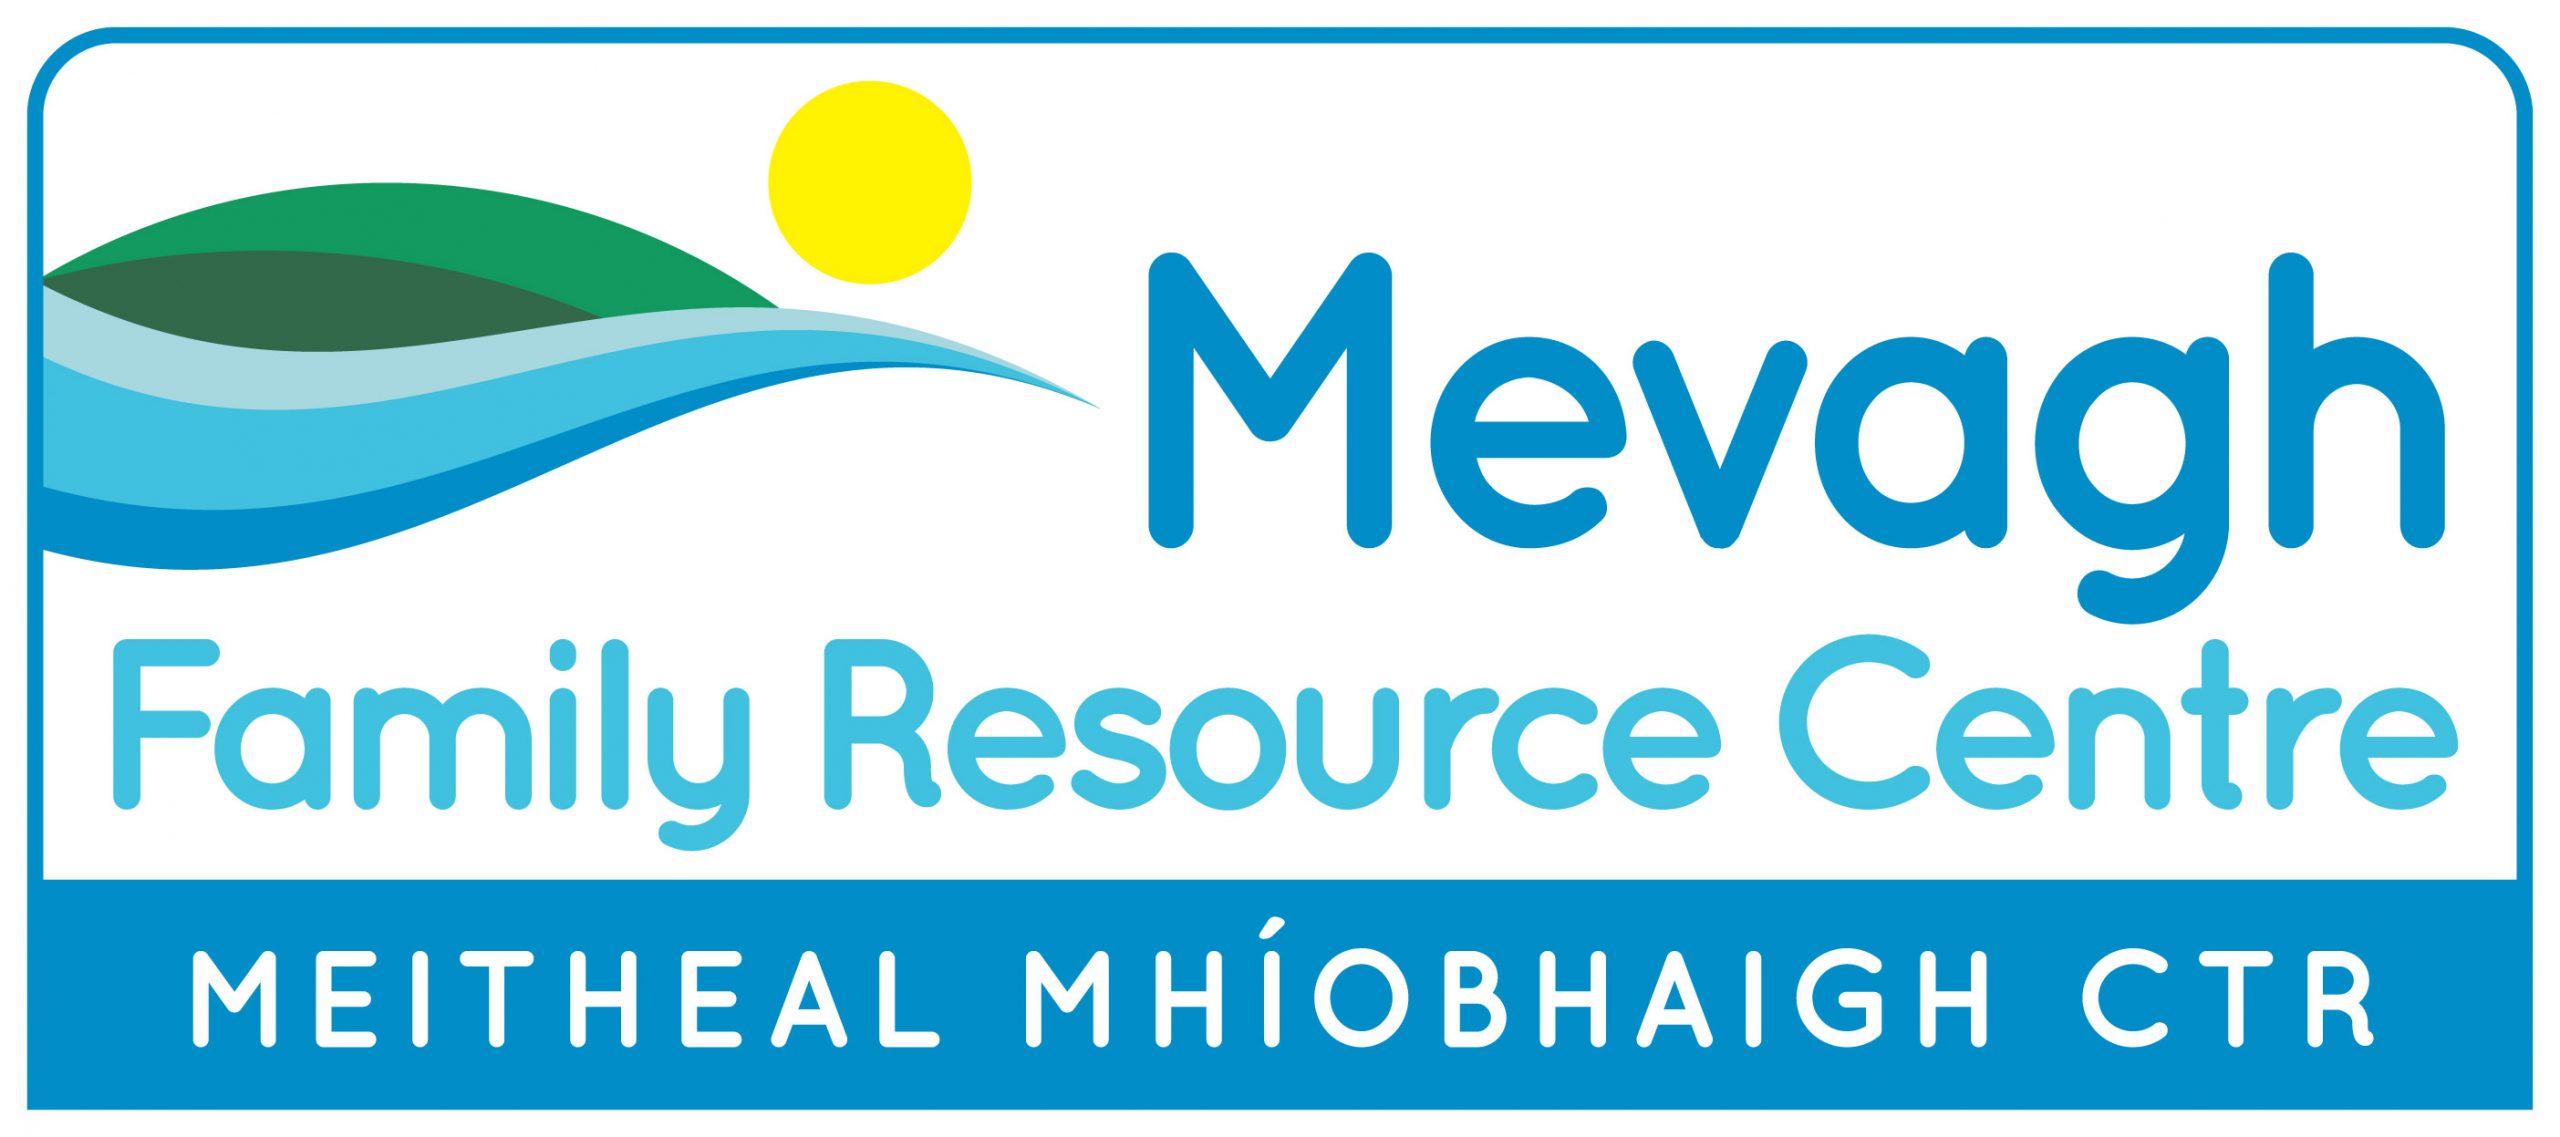 Meitheal Mhíobhaigh CTR / Mevagh Family Resource Centre